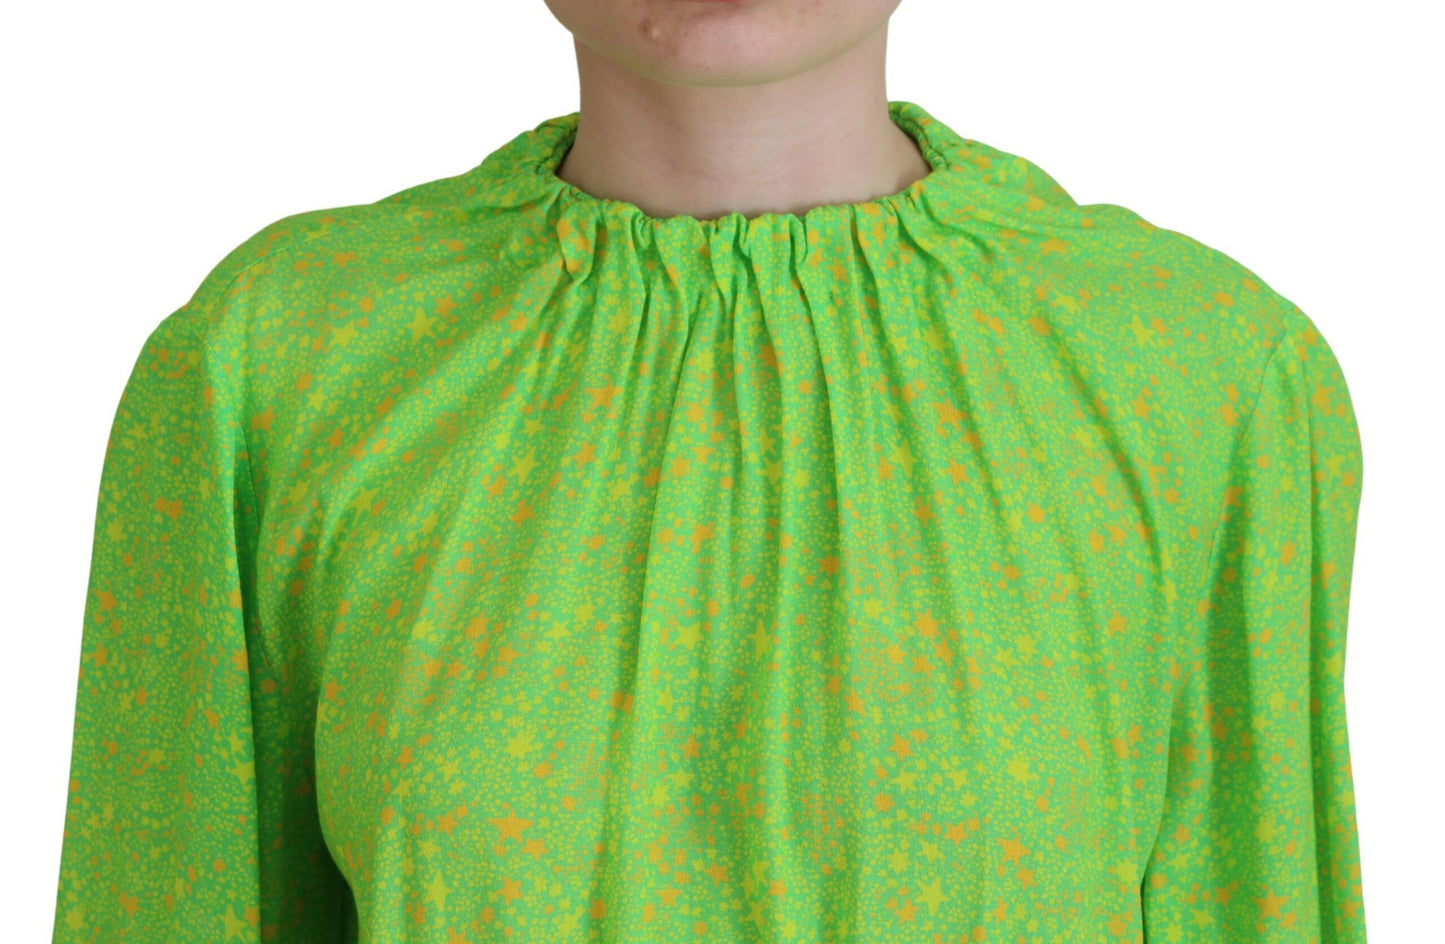 Green Stars Print Viscose Long Sleeves Blouse Top